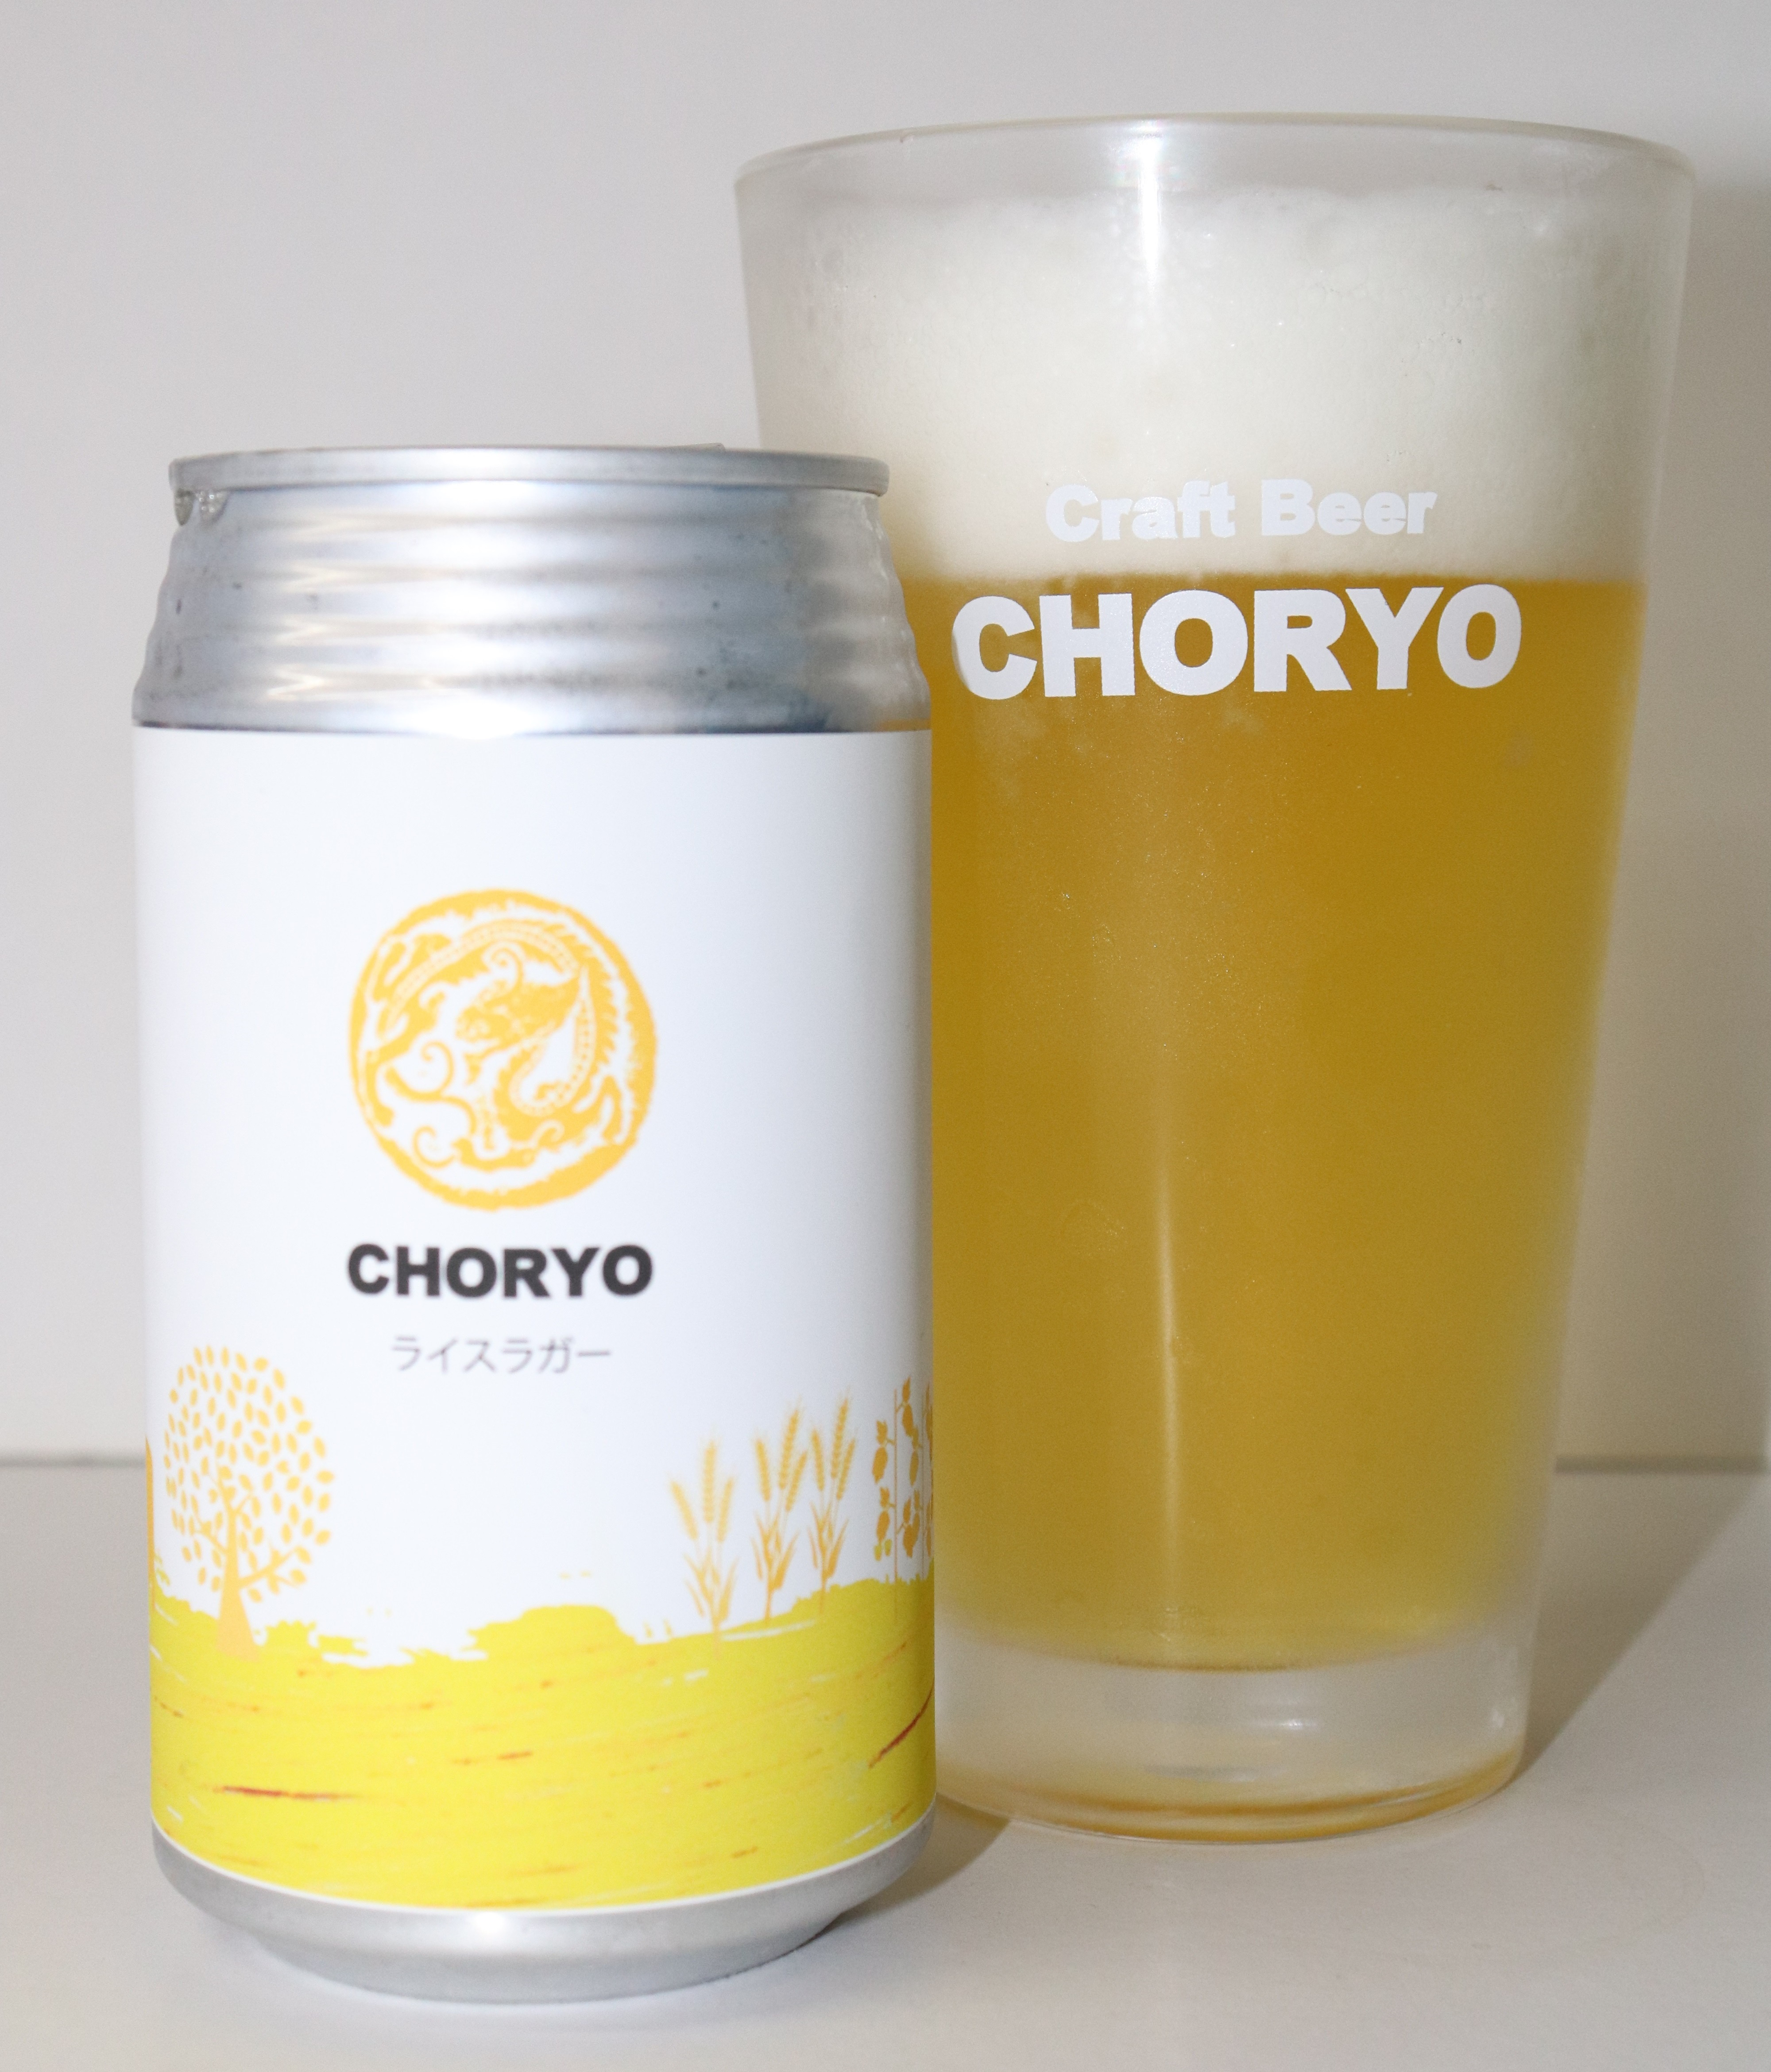 【クラフトビール】CHORYO